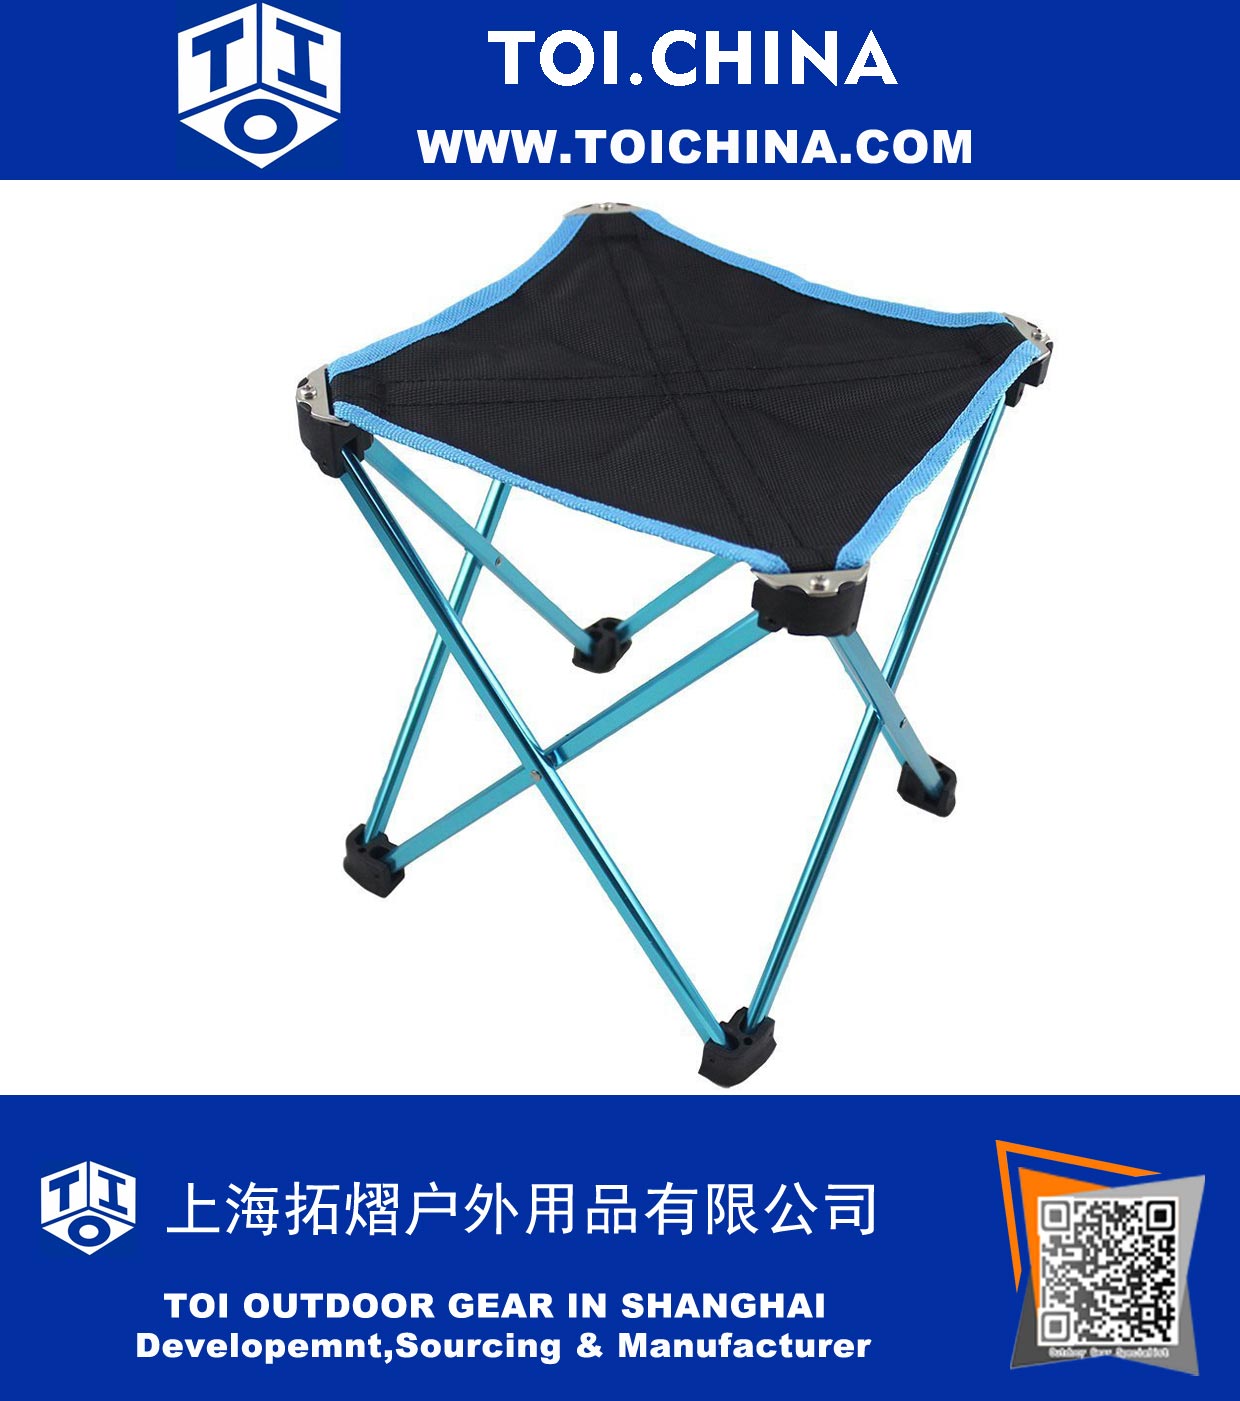 Tamborete dobrável ao ar livre pequena cadeira com saco de transporte para Camping caminhadas praia de pesca